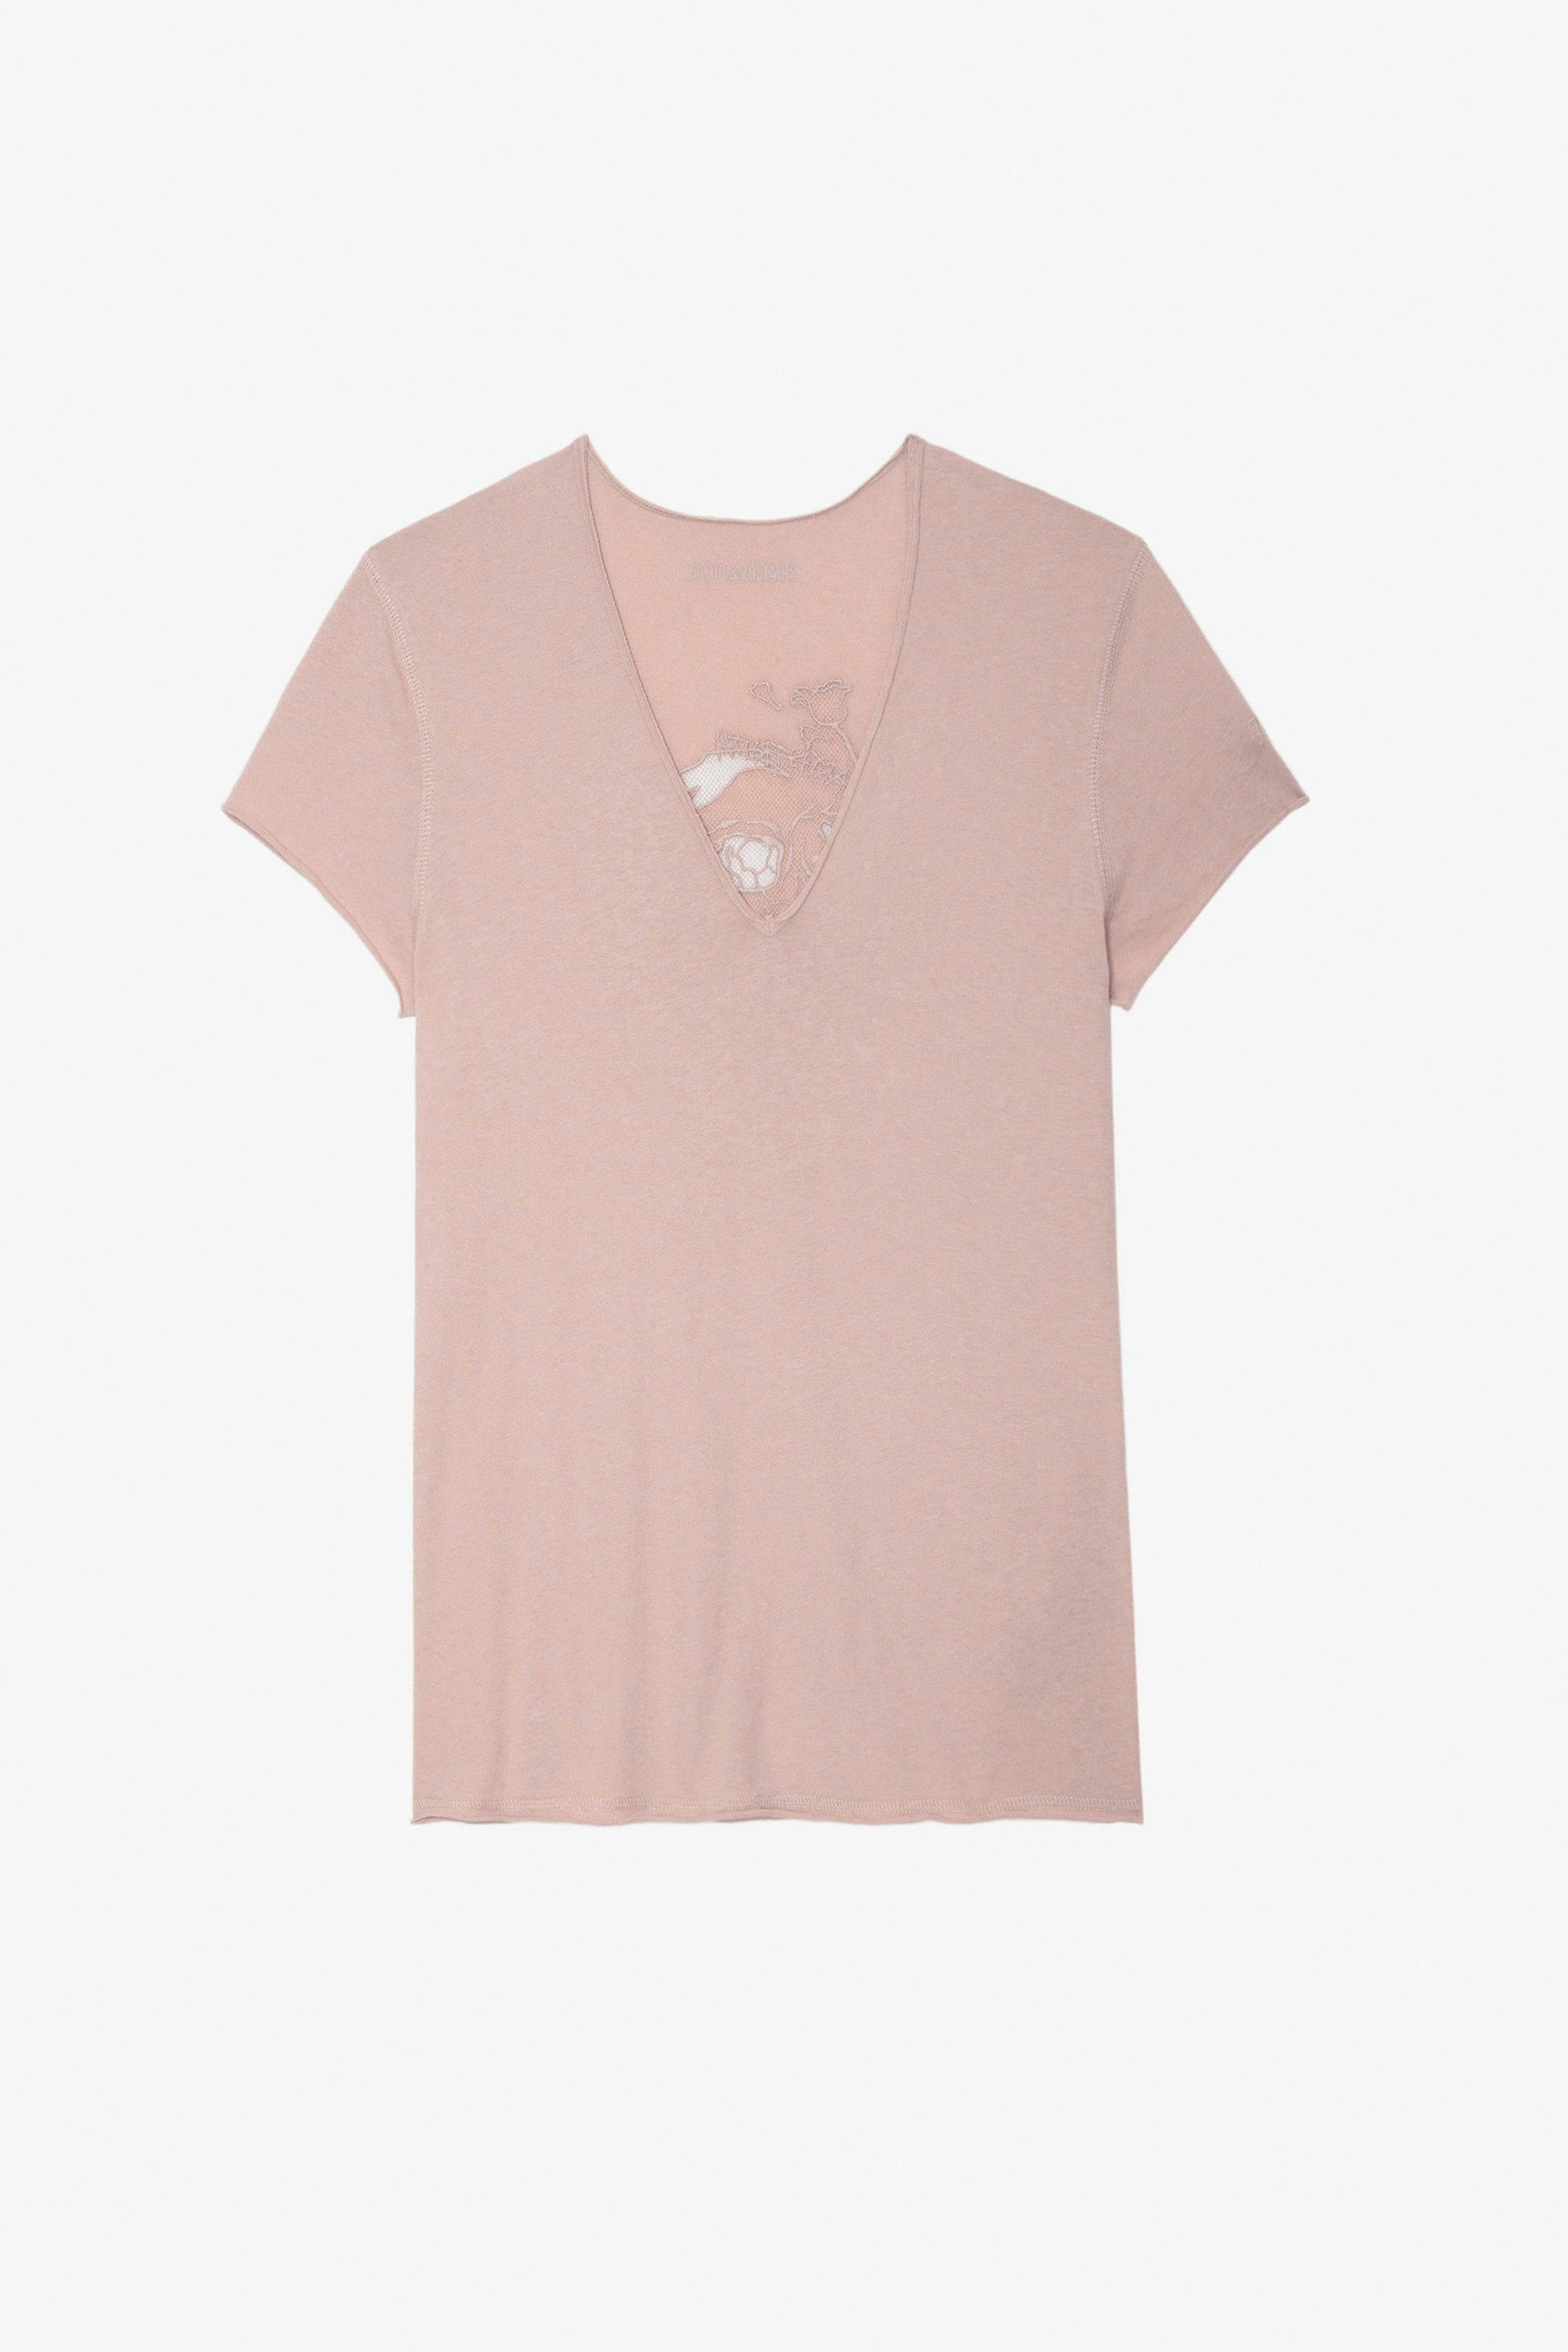 T-shirt Story Fishnet - T-shirt en coton rose orné d'une broderie tête de mort et fleurs au dos.